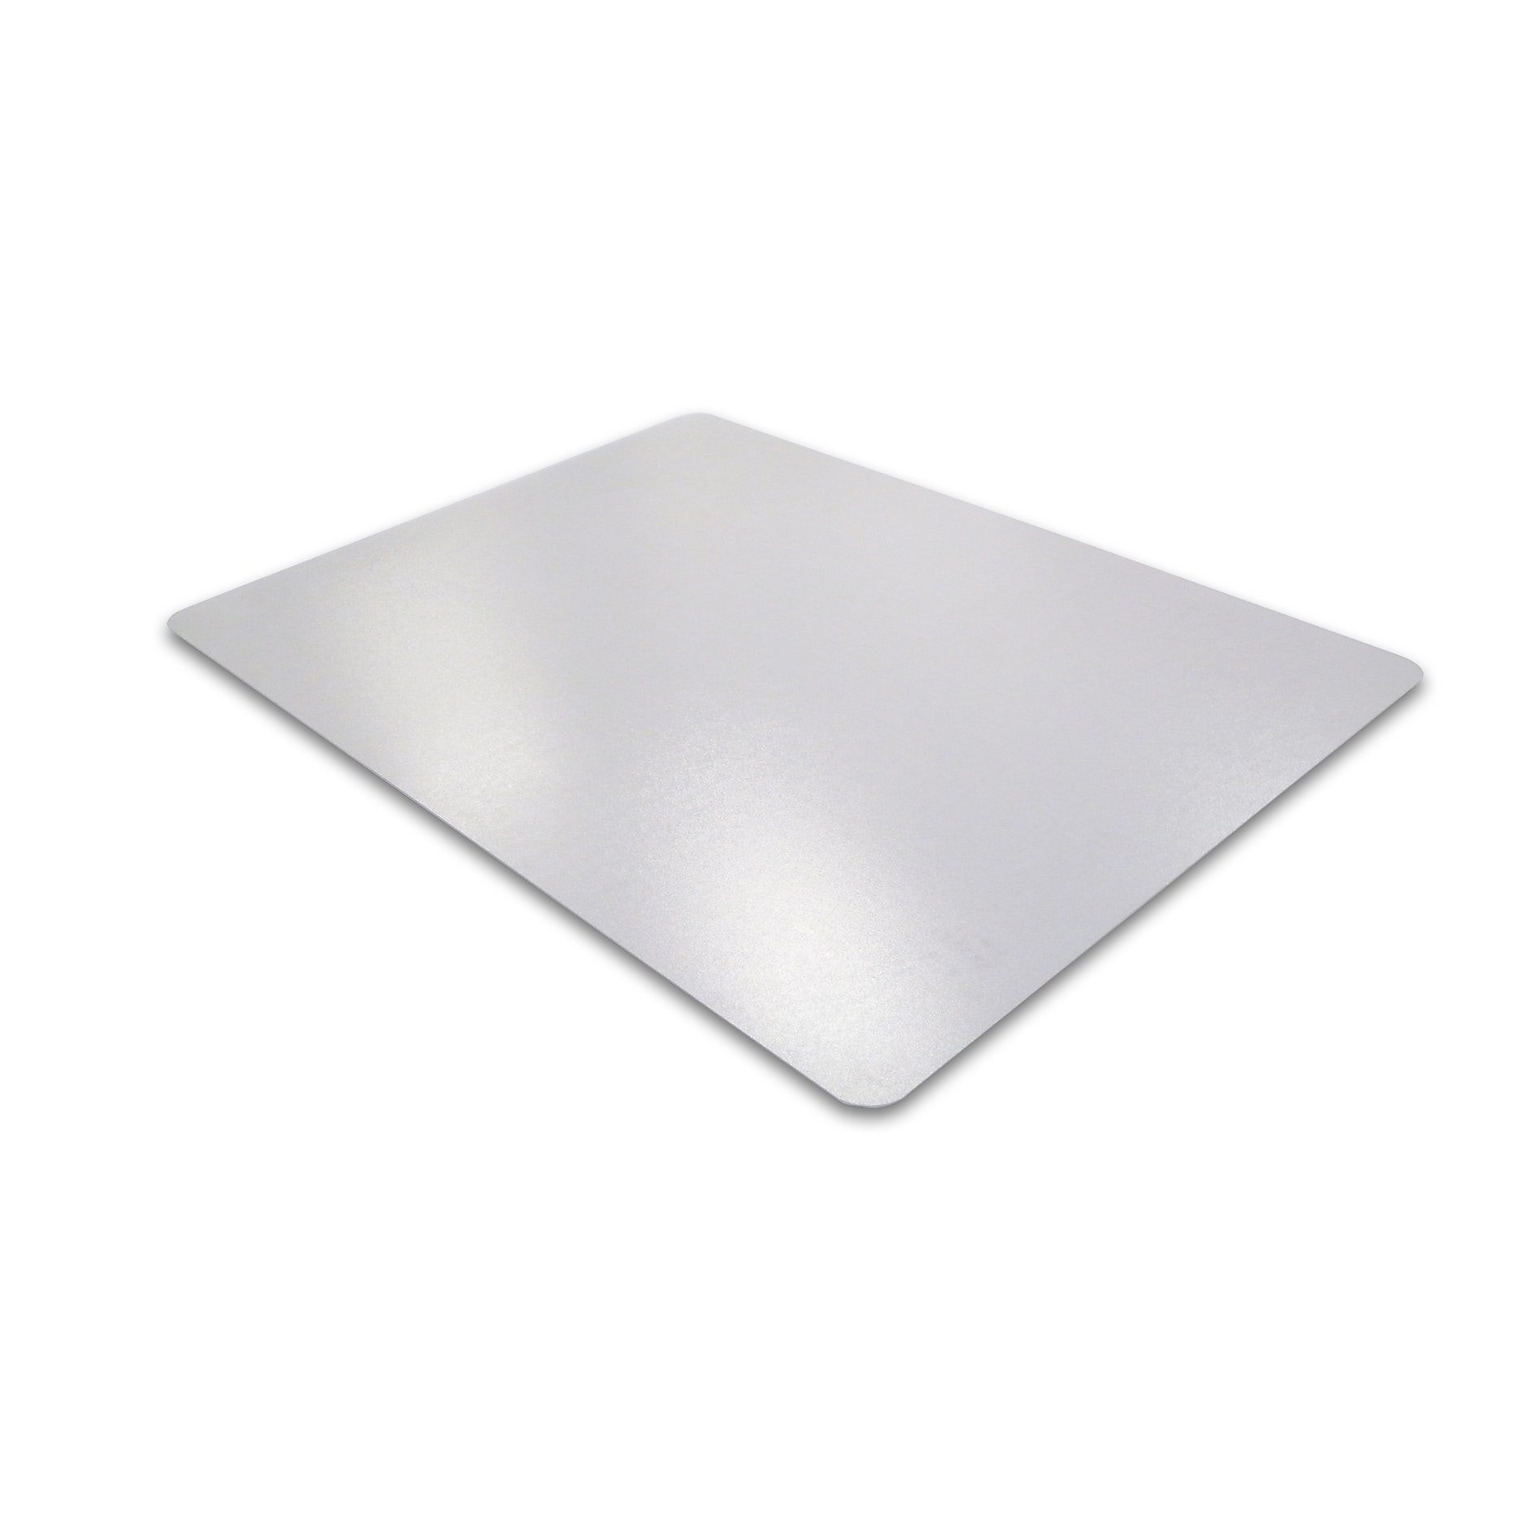 Floortex® Desktex® Anti-Static 12 x 18 Rectangular Desk Pads for Hard Surfaces, Vinyl (FPDE312184RA2)